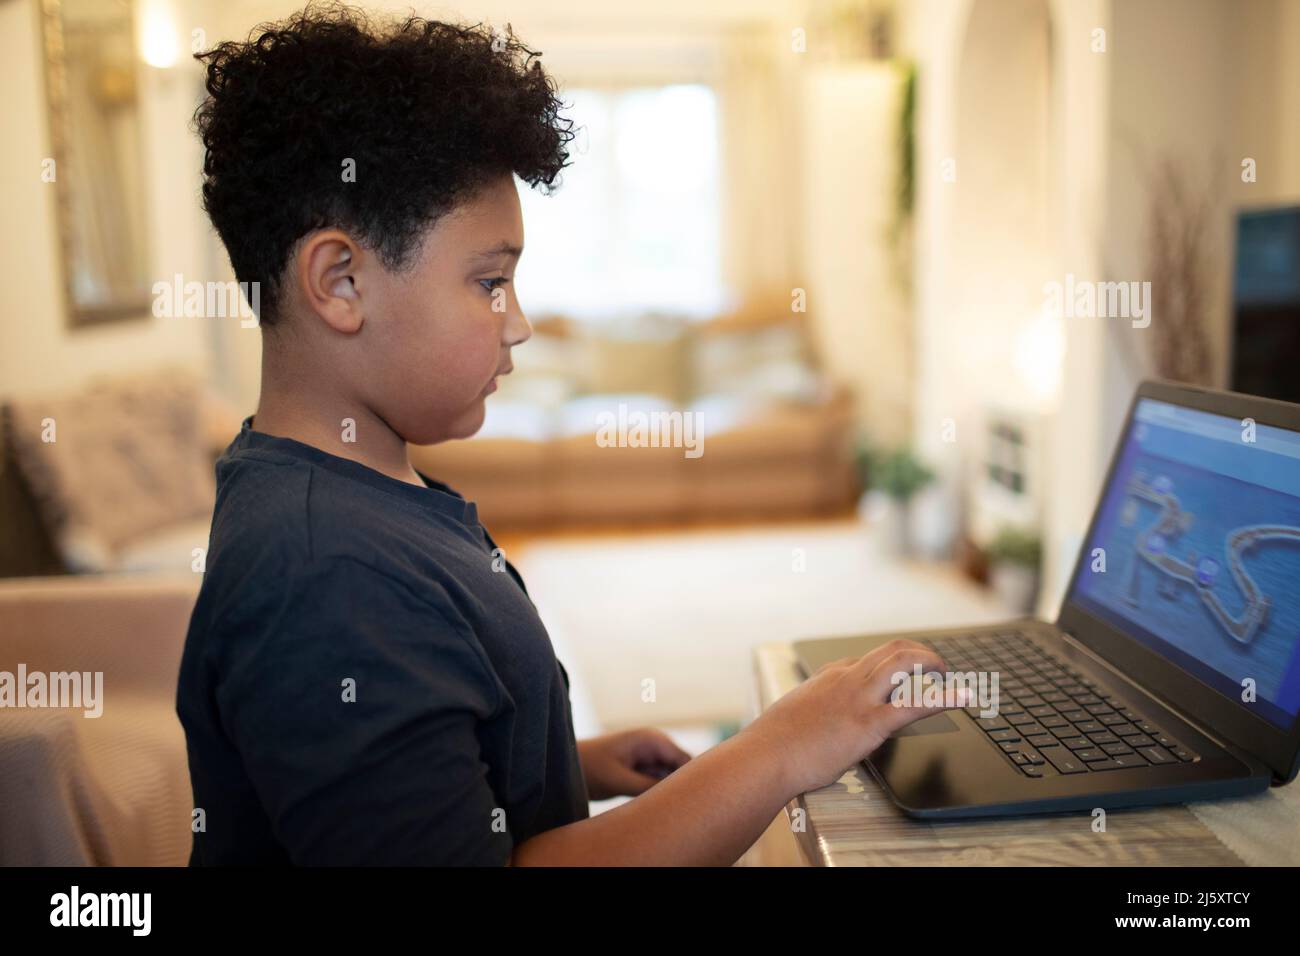 Boy playing video game at laptop Stock Photo